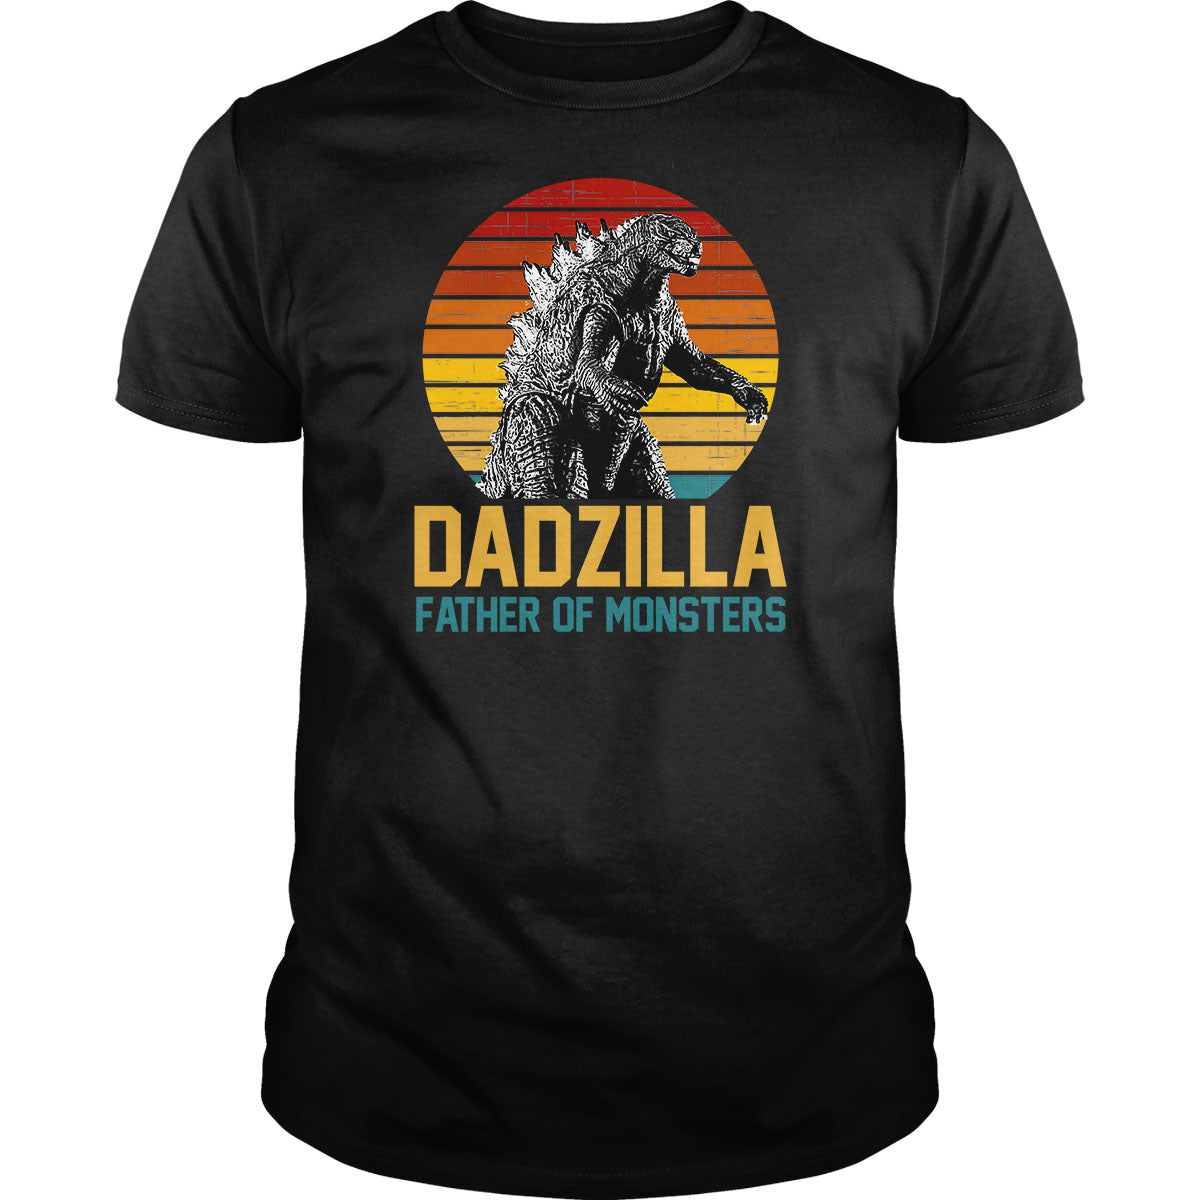 Dadzilla - BustedTees.com